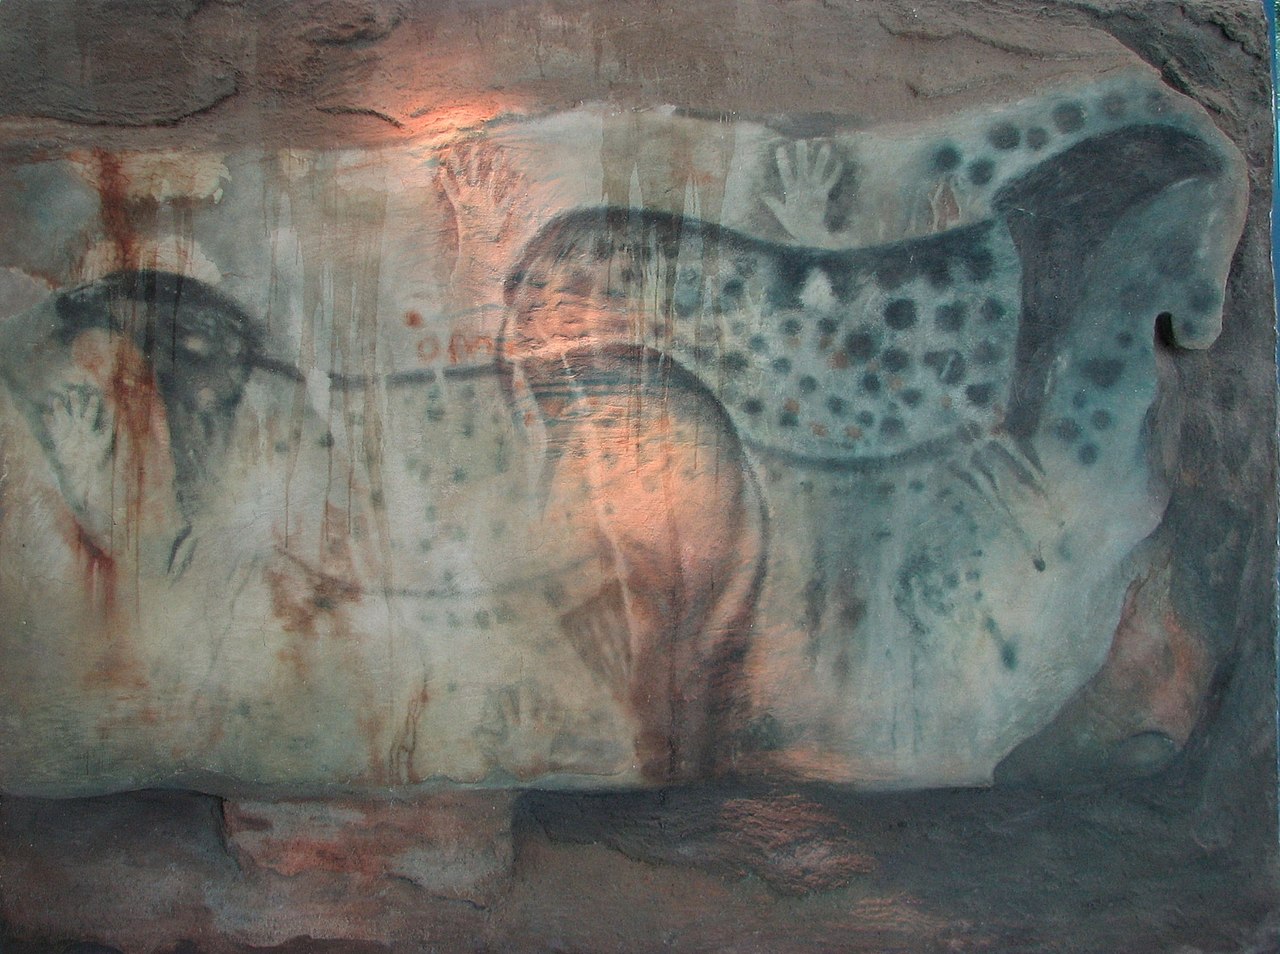 Vyobrazení koní v jeskyni Pech Merle. Zdroj: Wikipedia, Kersti Nebelsiek